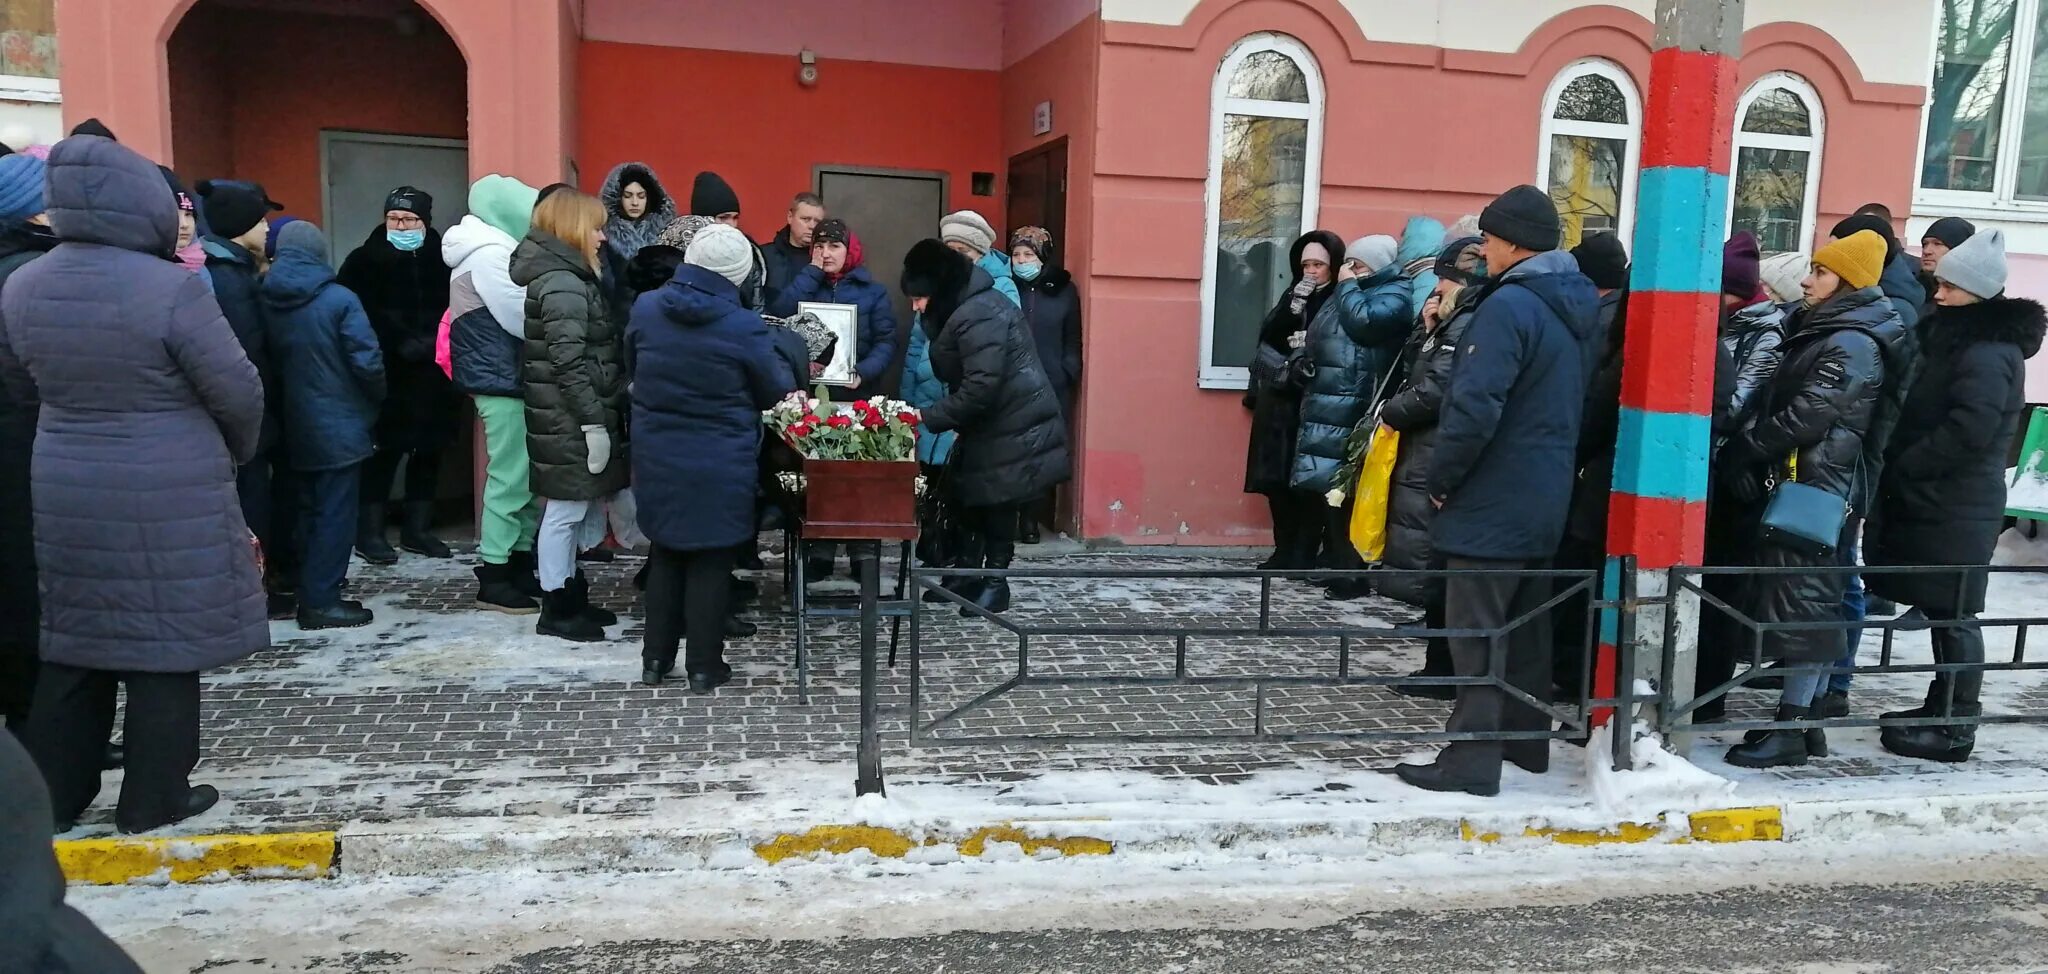 Похороны убитой девочки. Похороны девочки Ульяновск. Похороны сычева